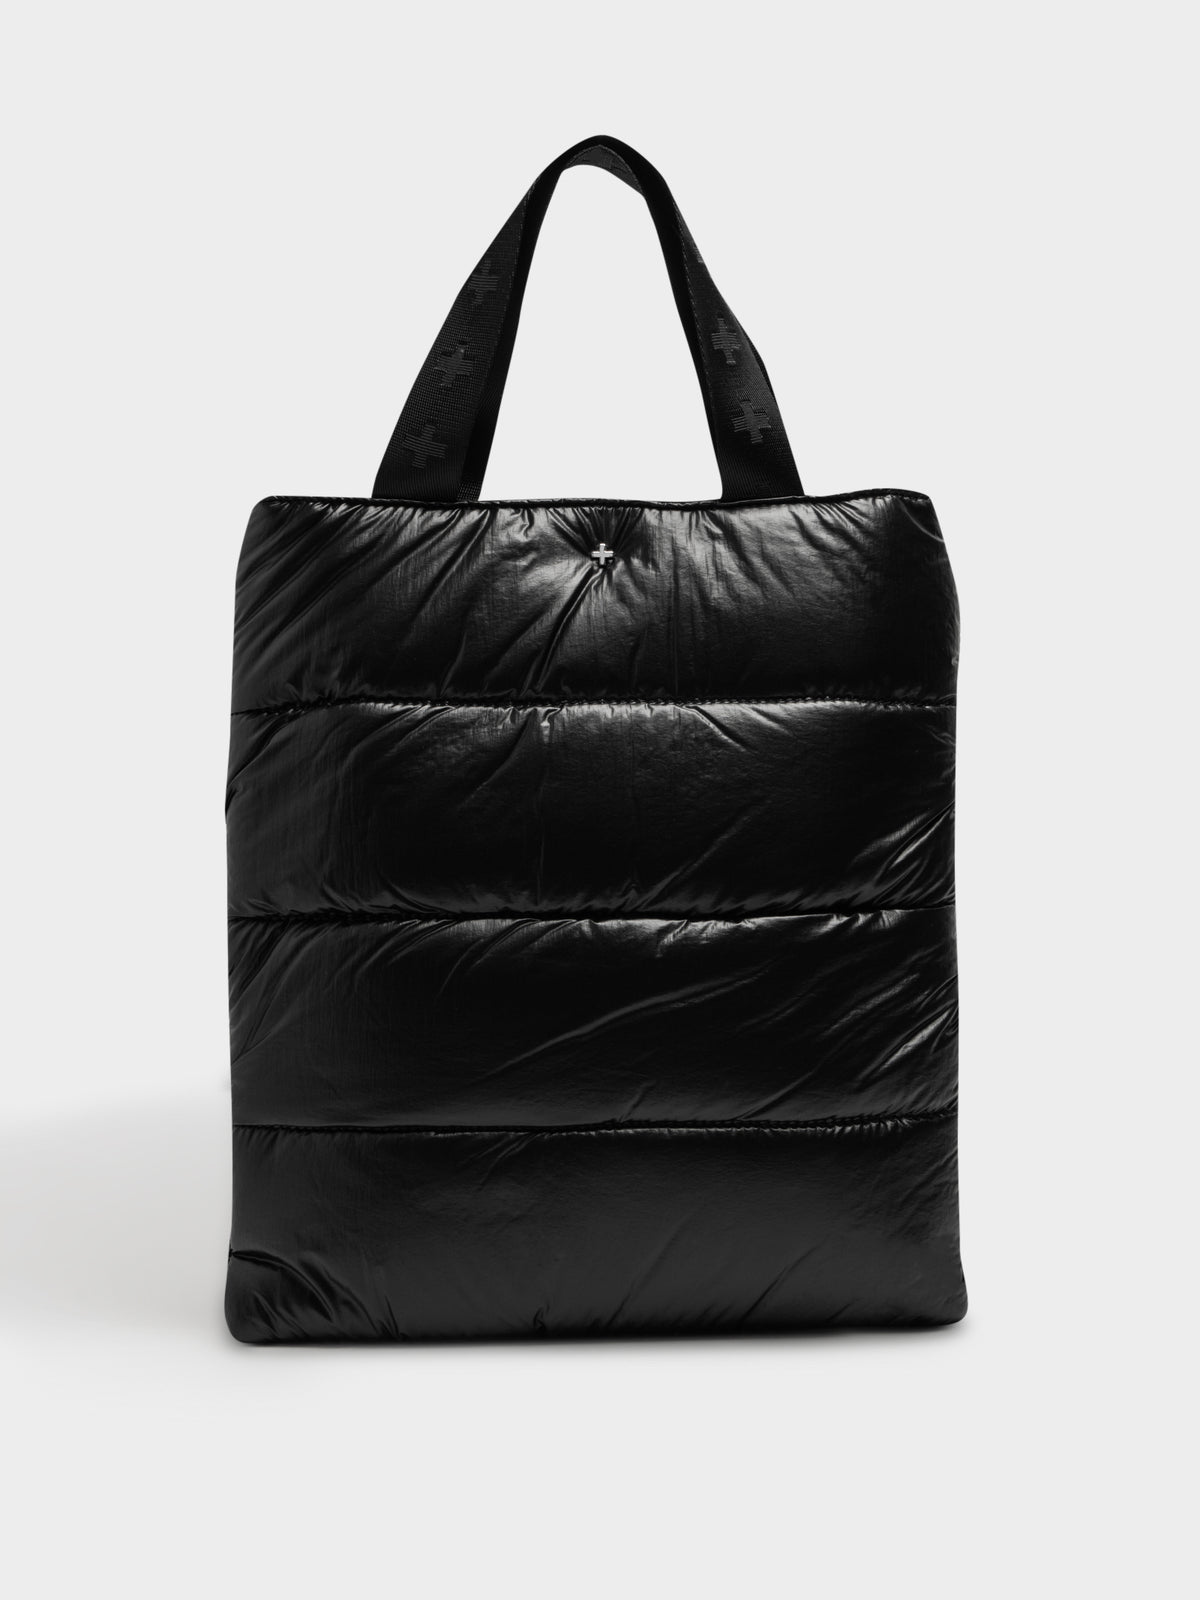 Zephyr Bag in Black